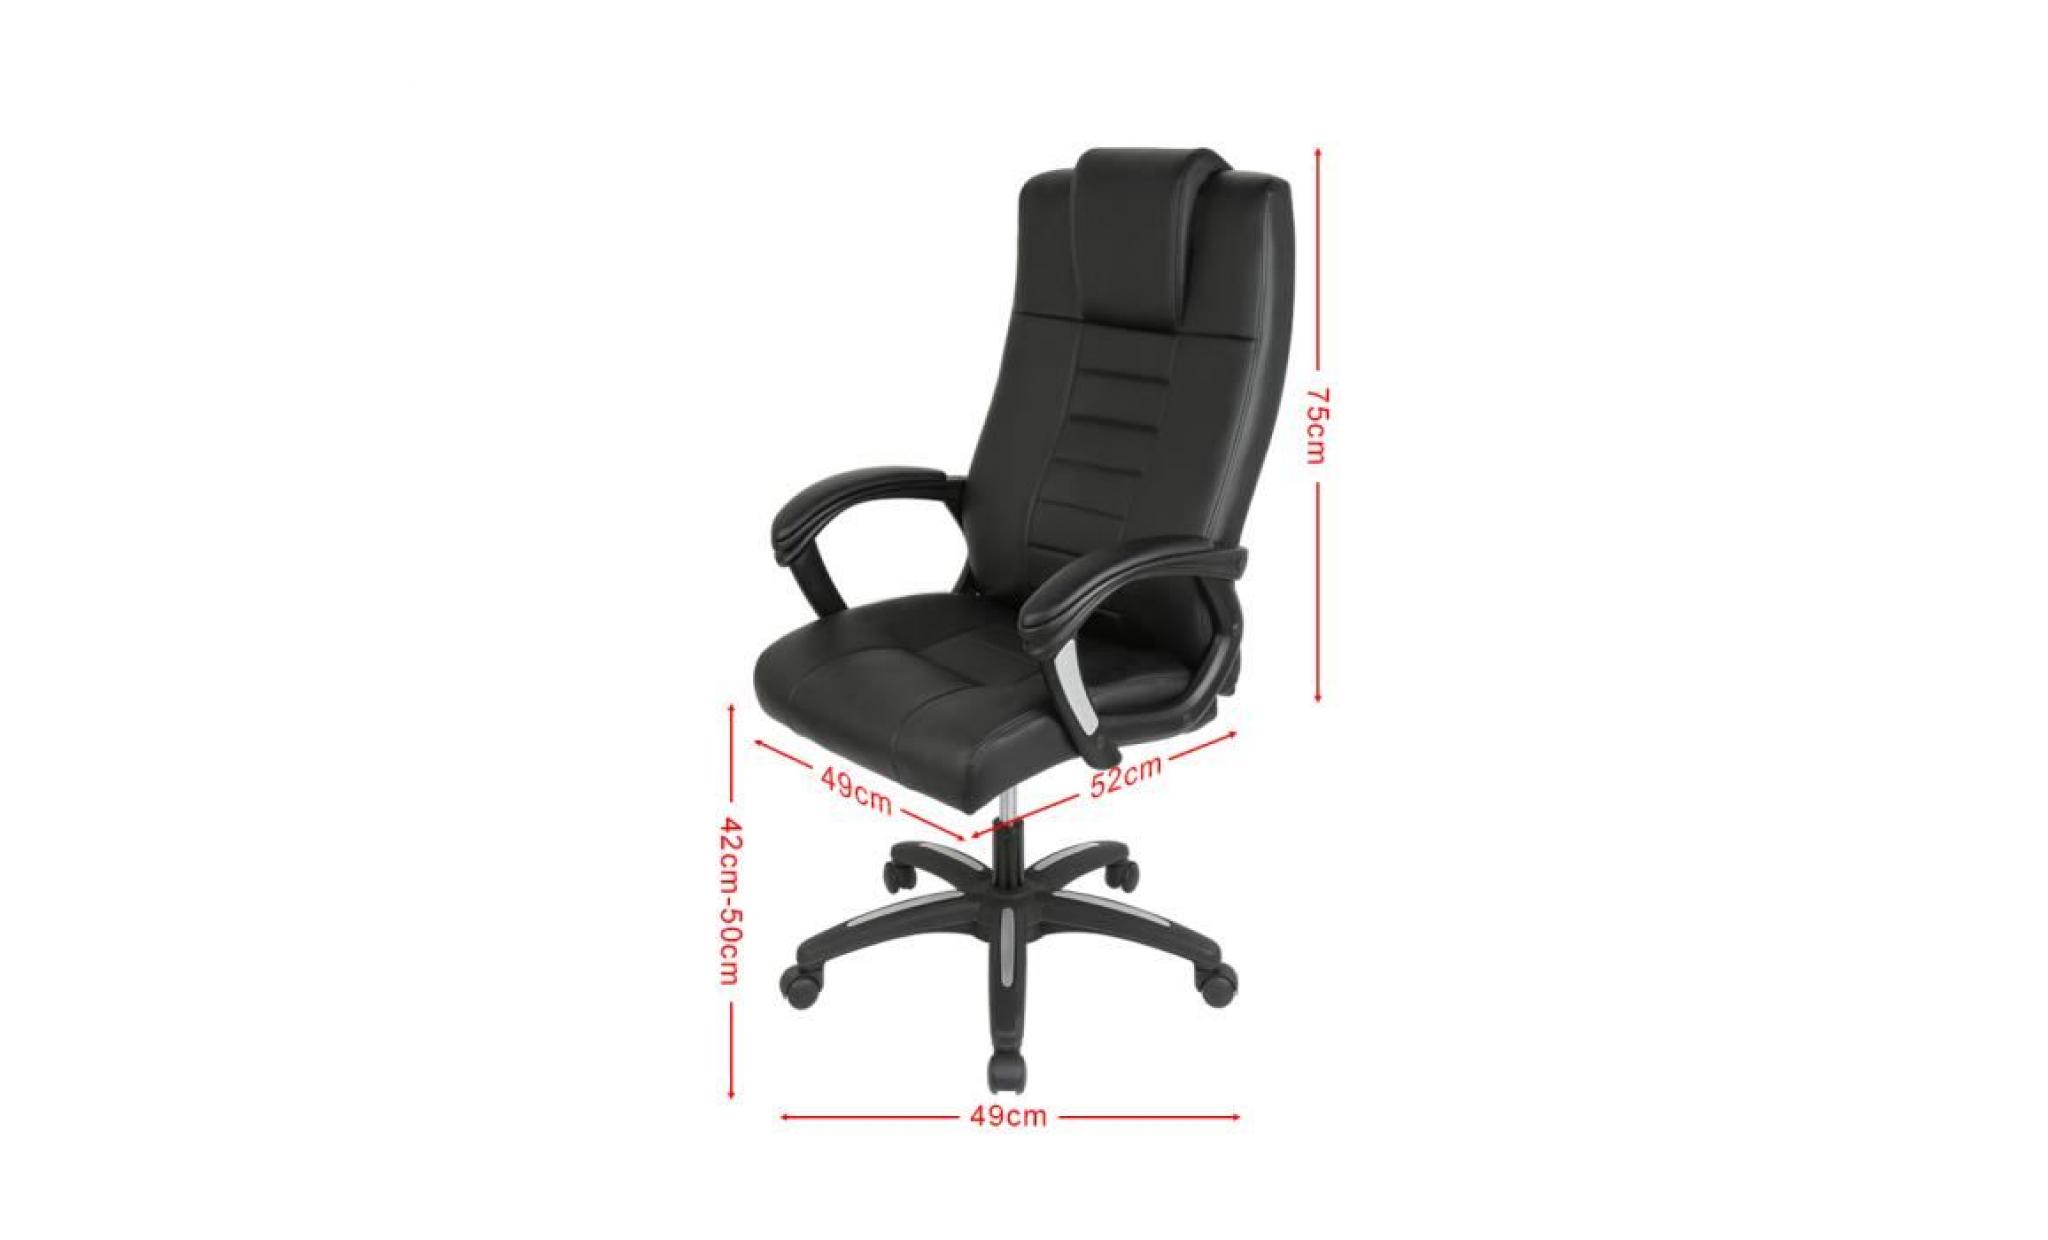 miss fauteuil de bureau, assise rembourrée épais e, hauteur réglable, ergonomique,chaise de bureau pour ordinateur pas cher